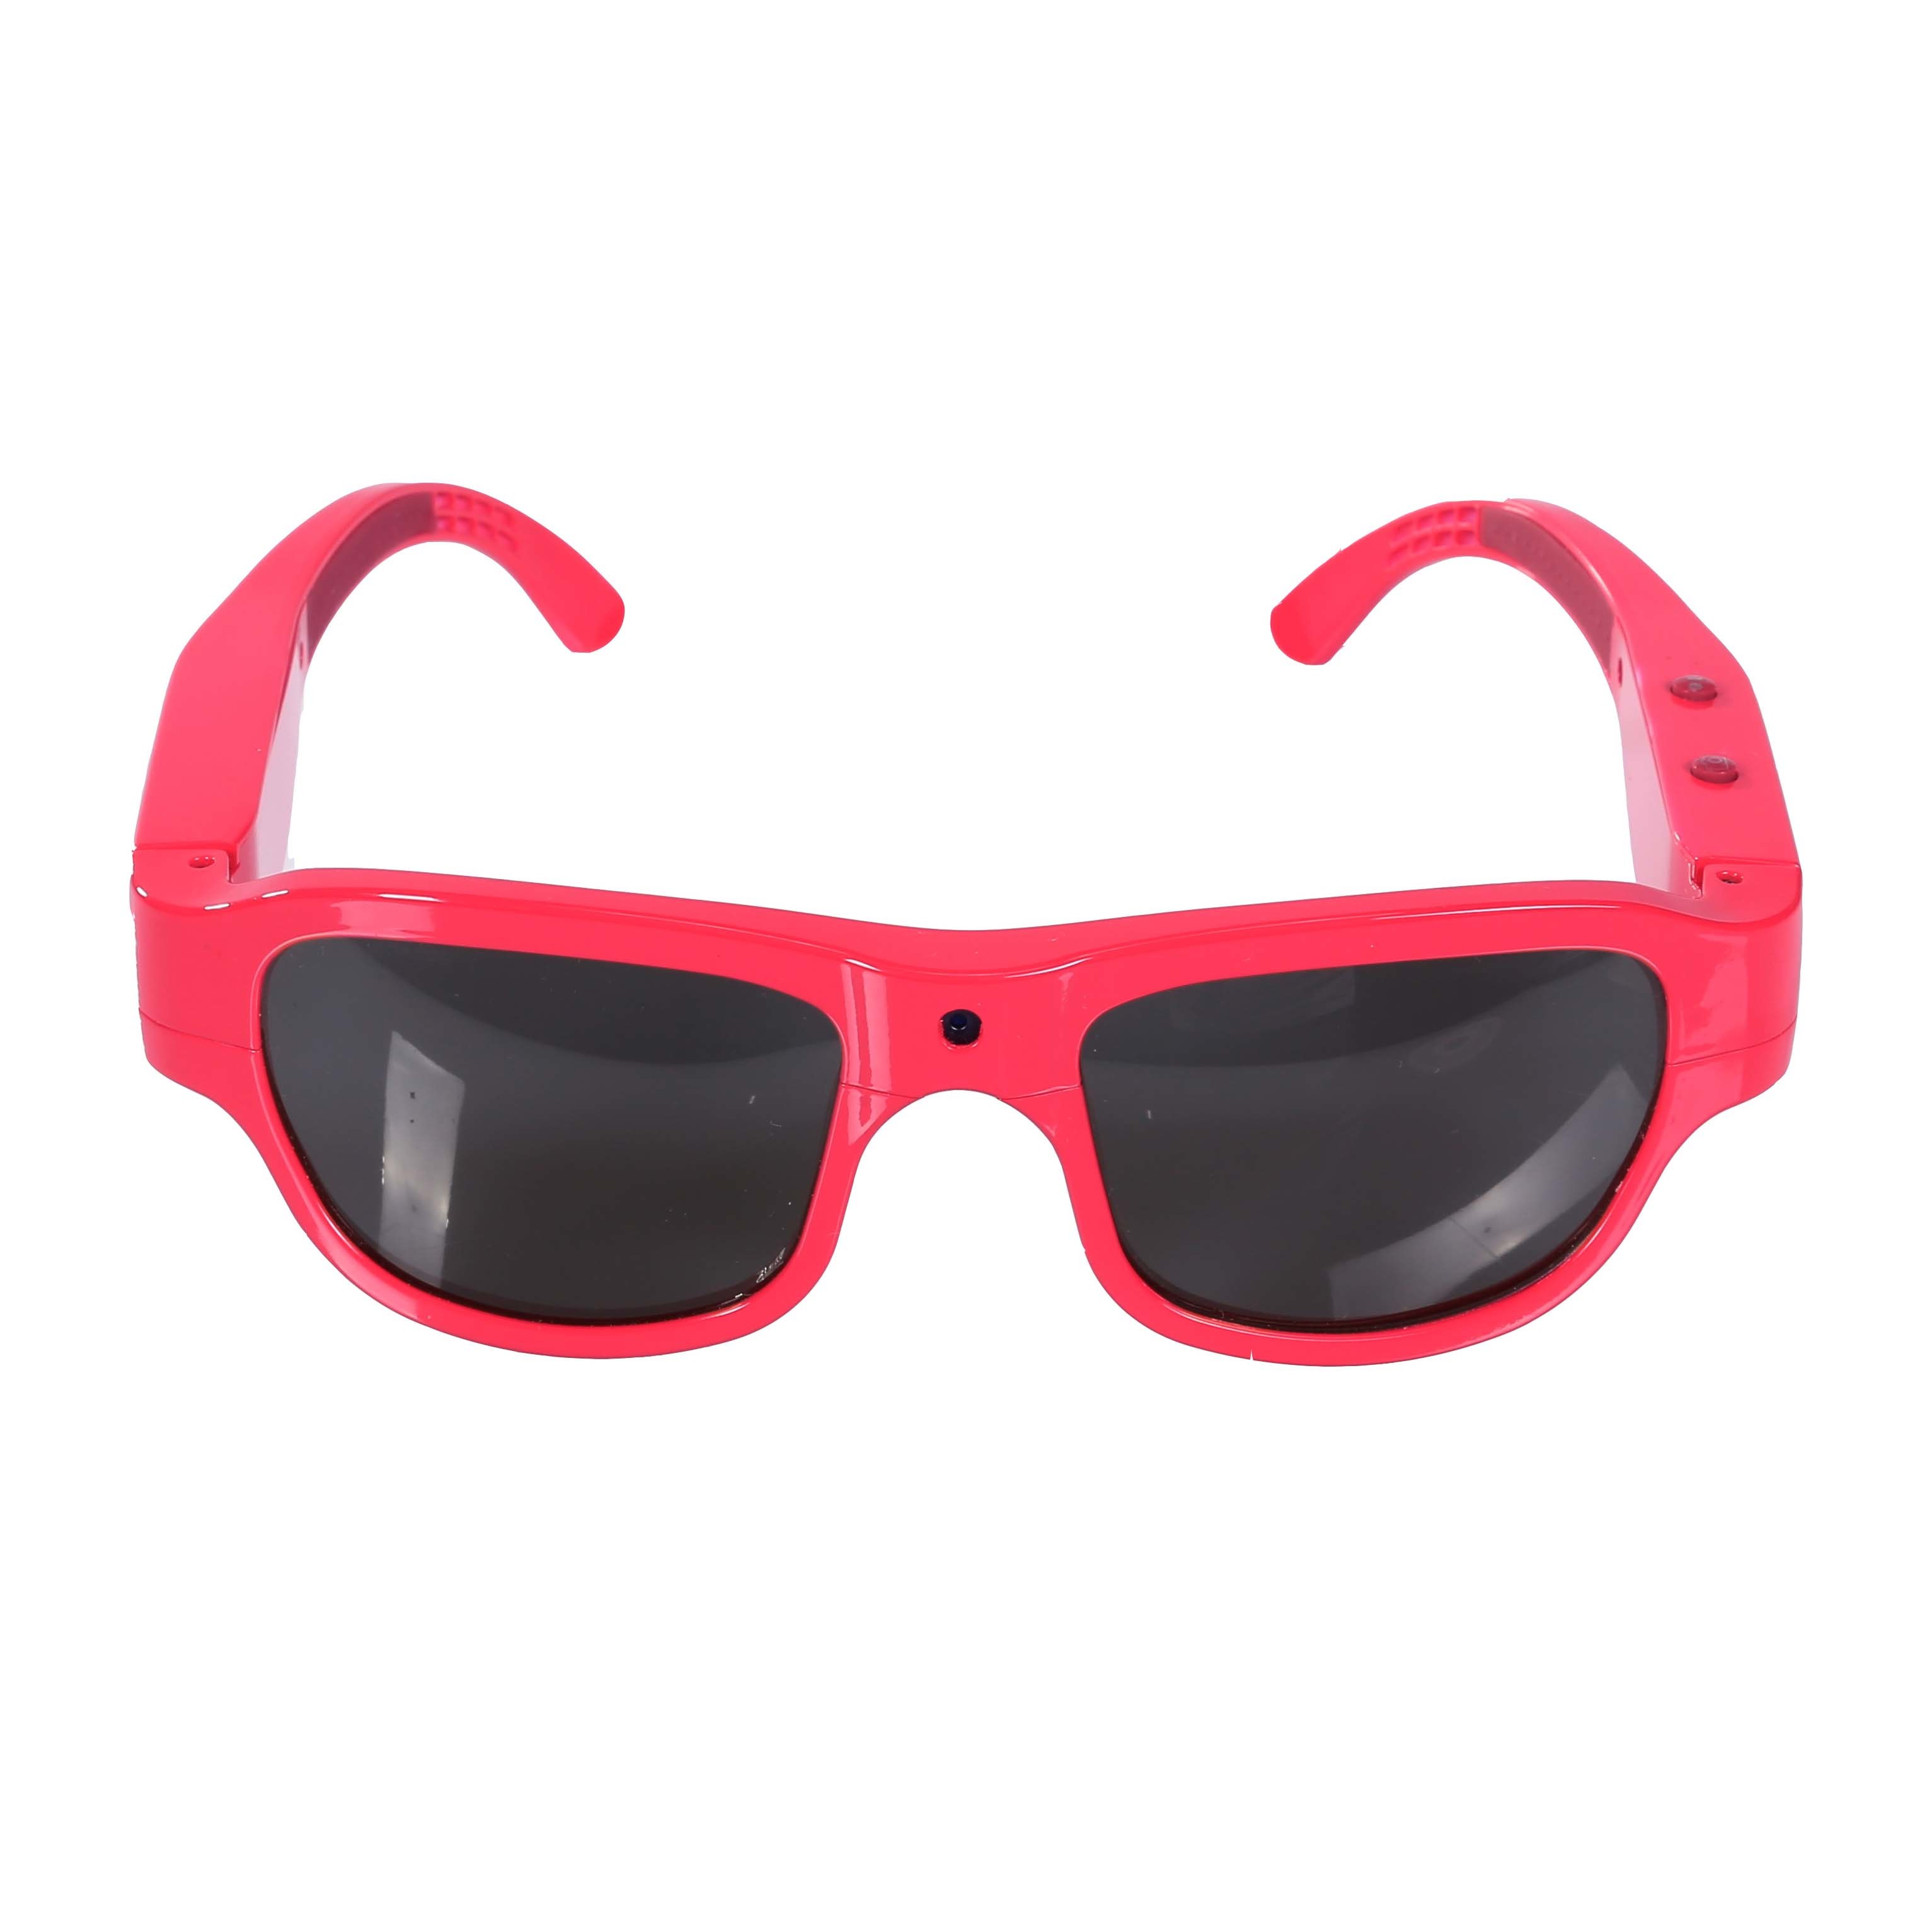 Video Recording Sunglasses with 1080P Camera WiFi Video Camera Glasses